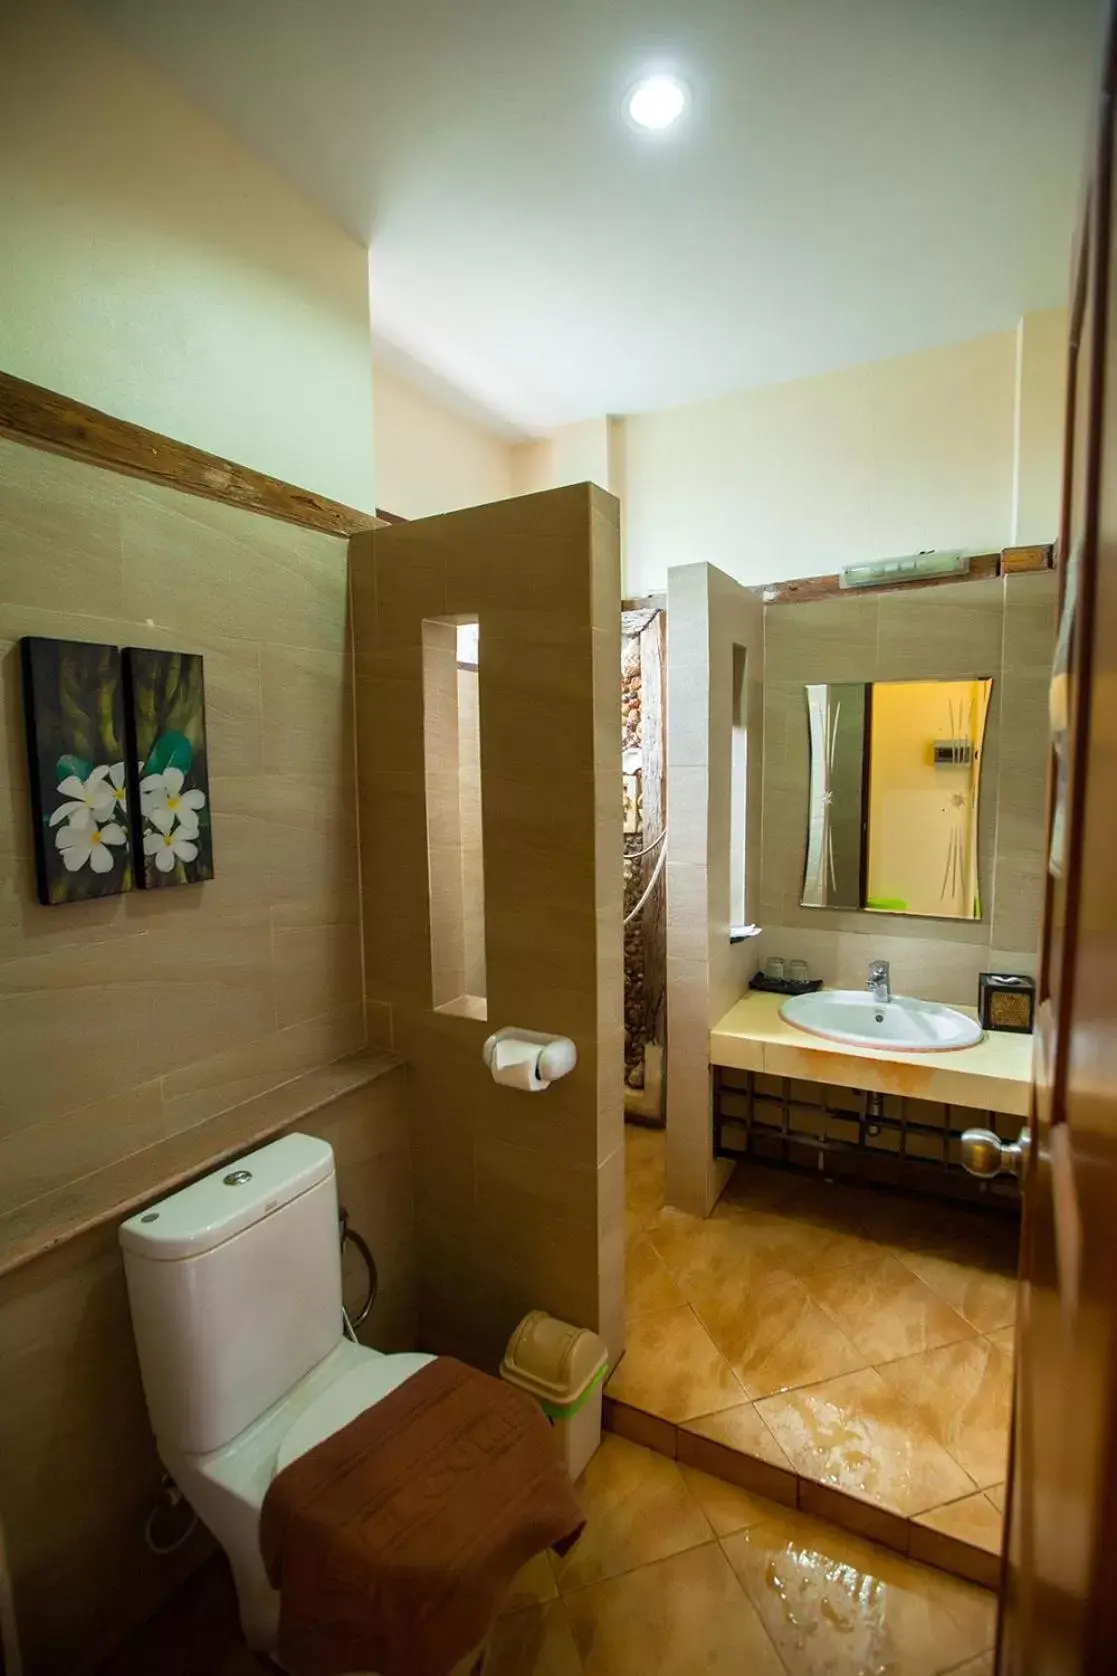 Bathroom in Salakphet Resort